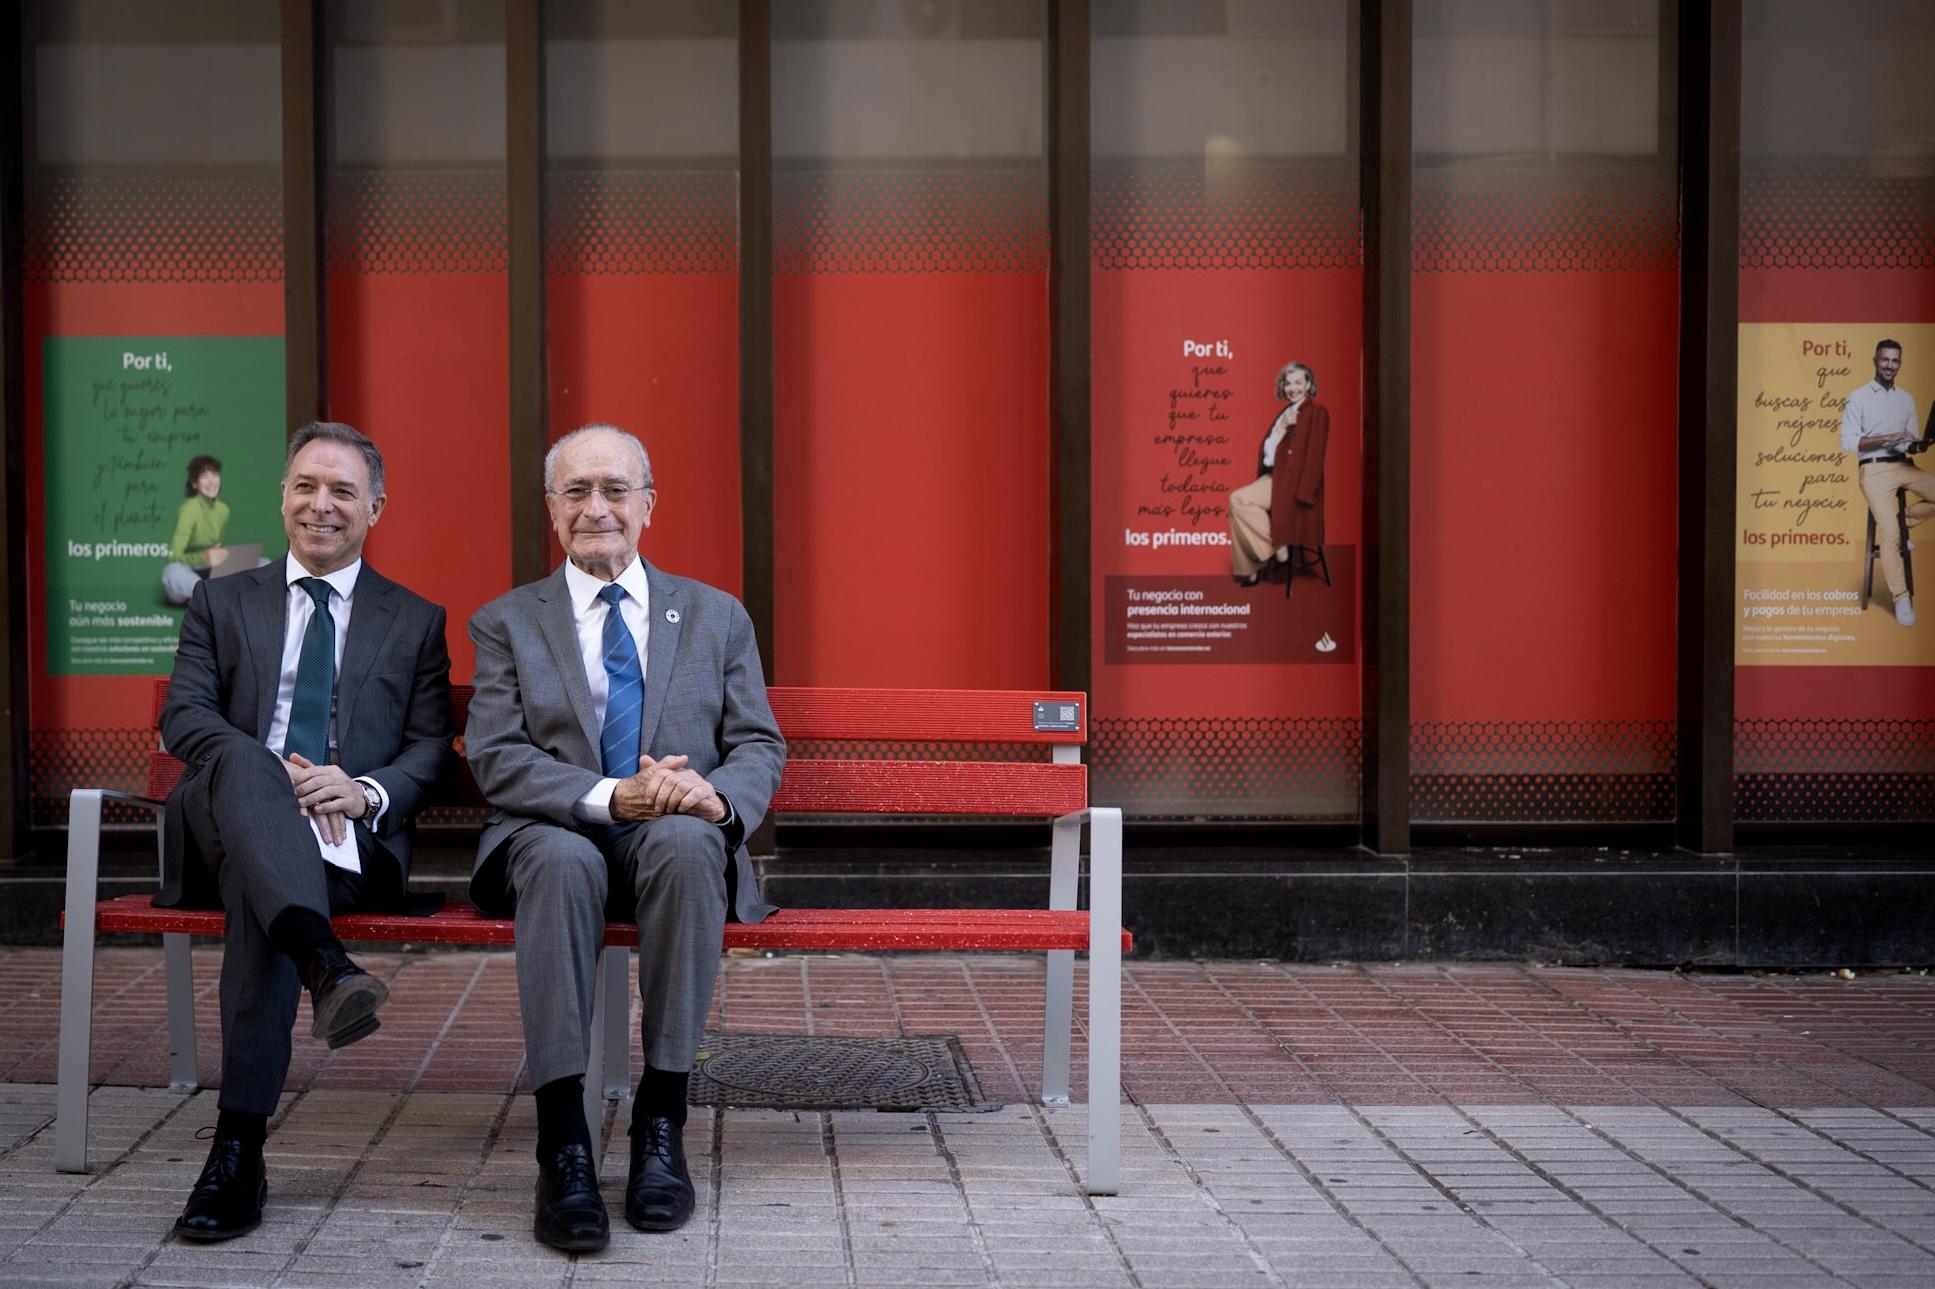 Nuevo mobiliario urbano donado por el Banco Santander a la ciudad de Málaga